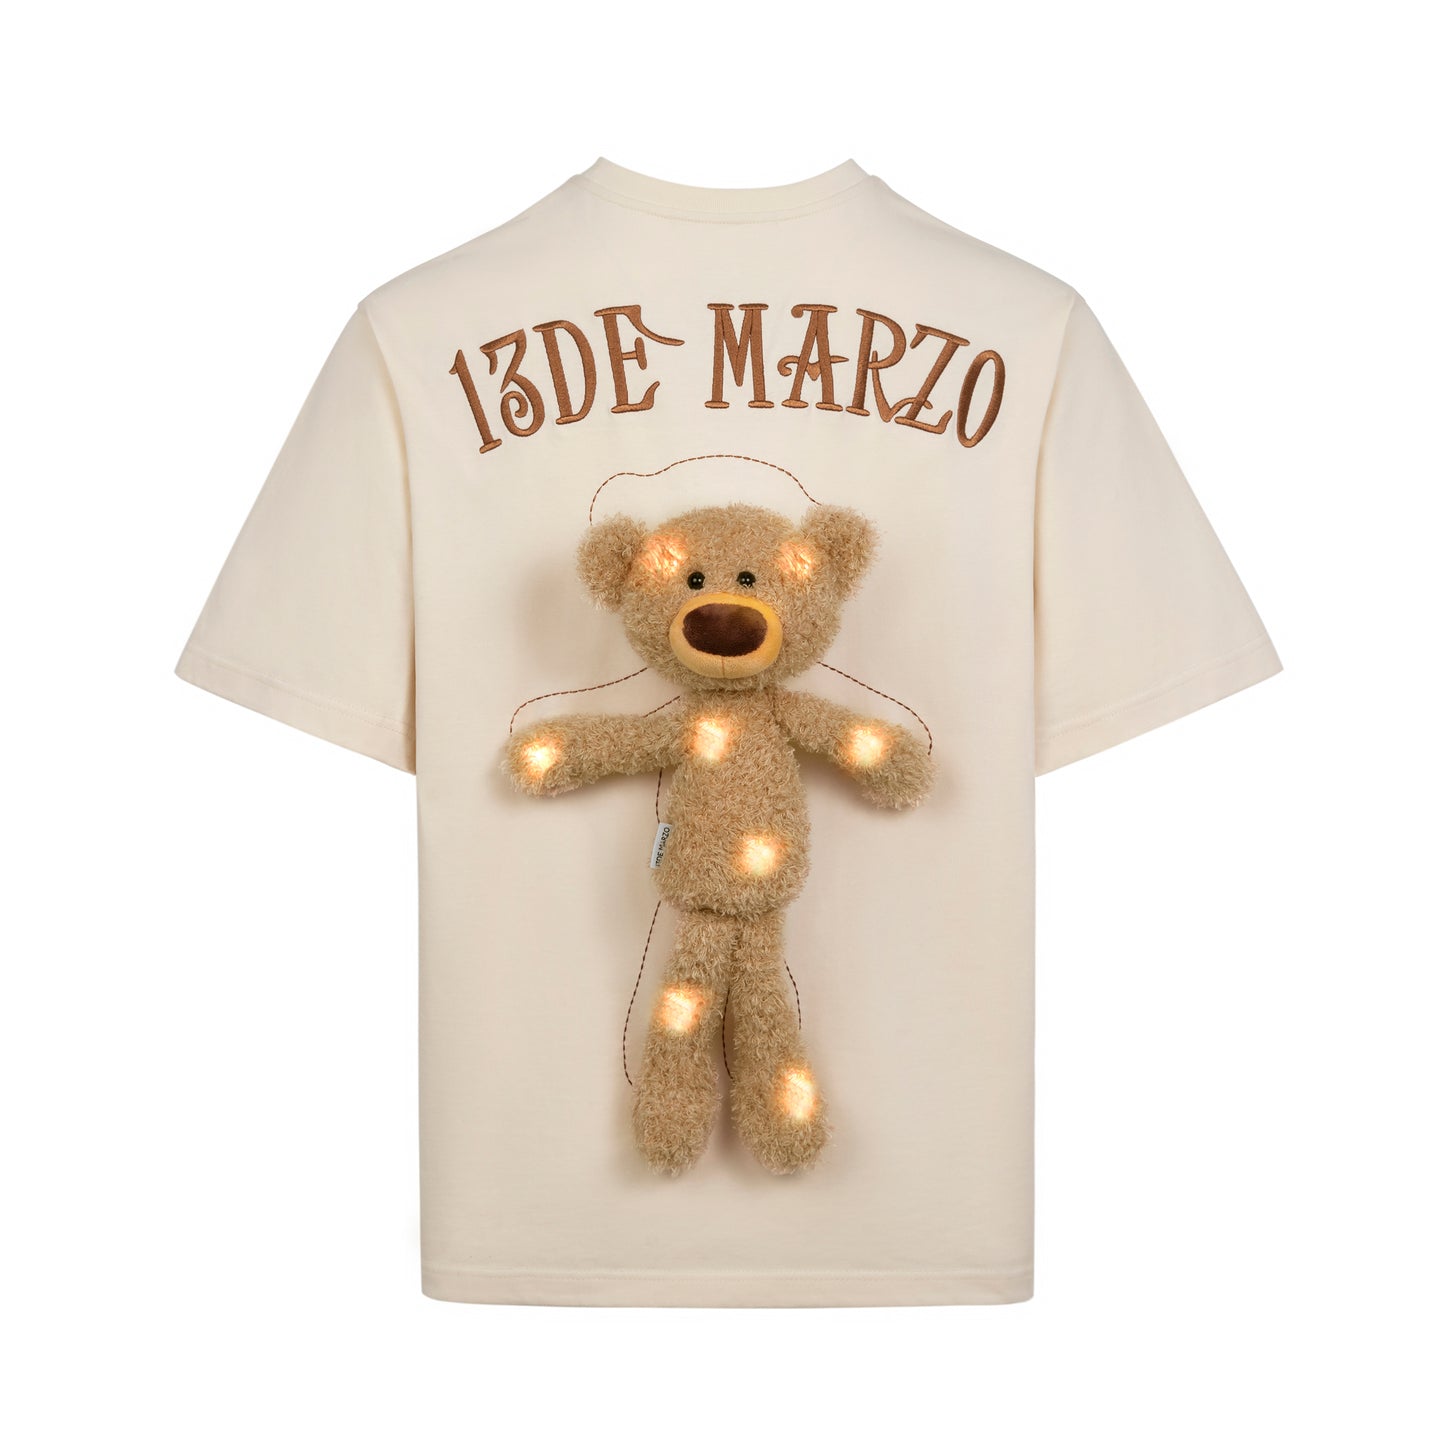 13DE MARZO Doozoo Original Luminous T-shirt